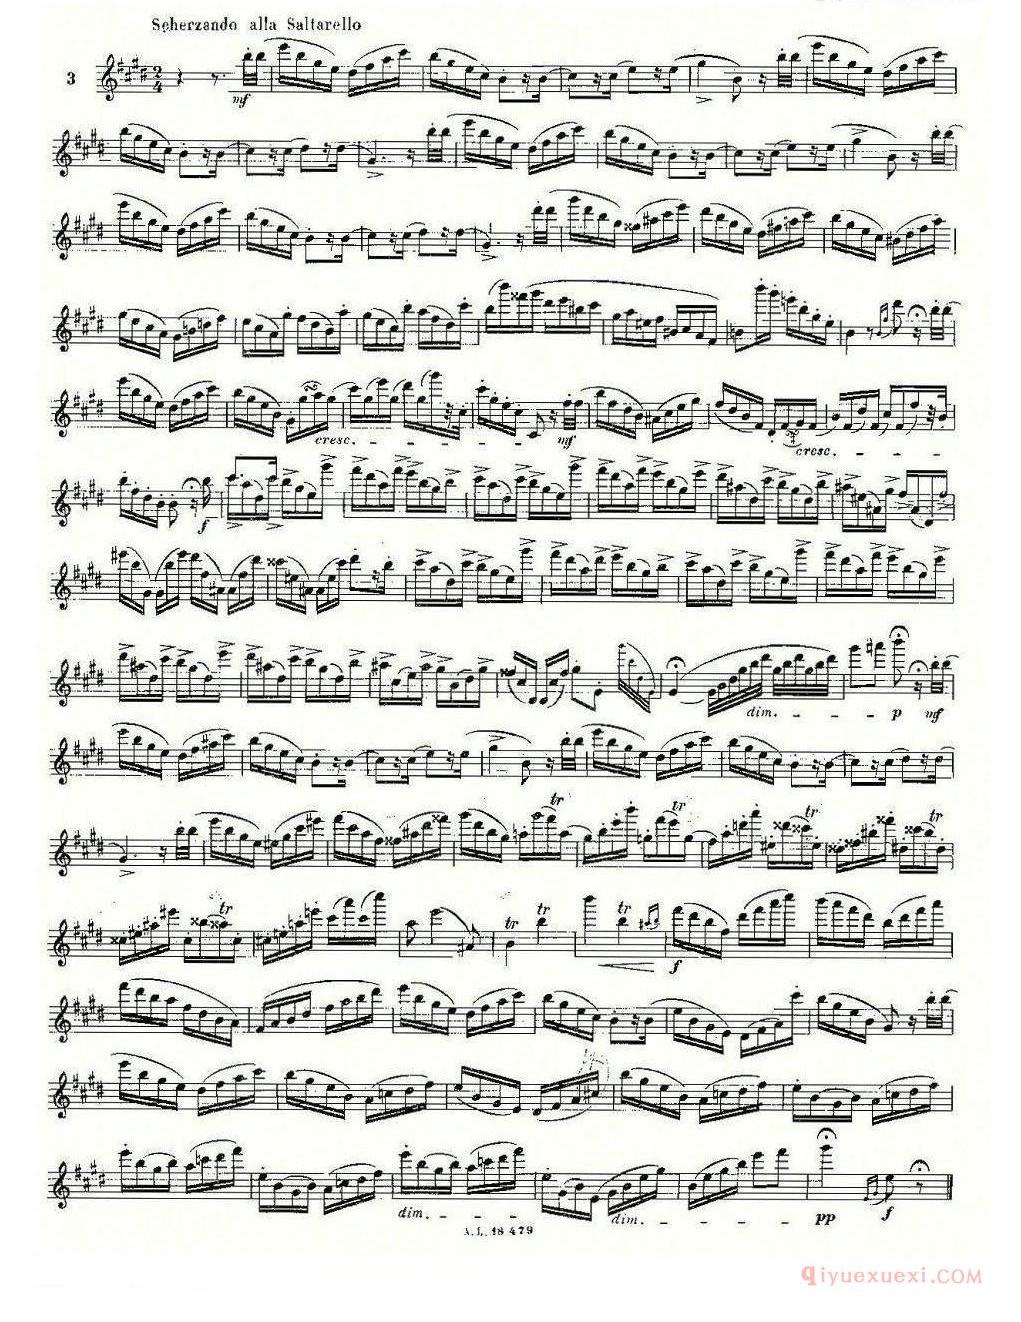 基于维尼亚夫斯基练习曲的10首长笛练习曲完整版